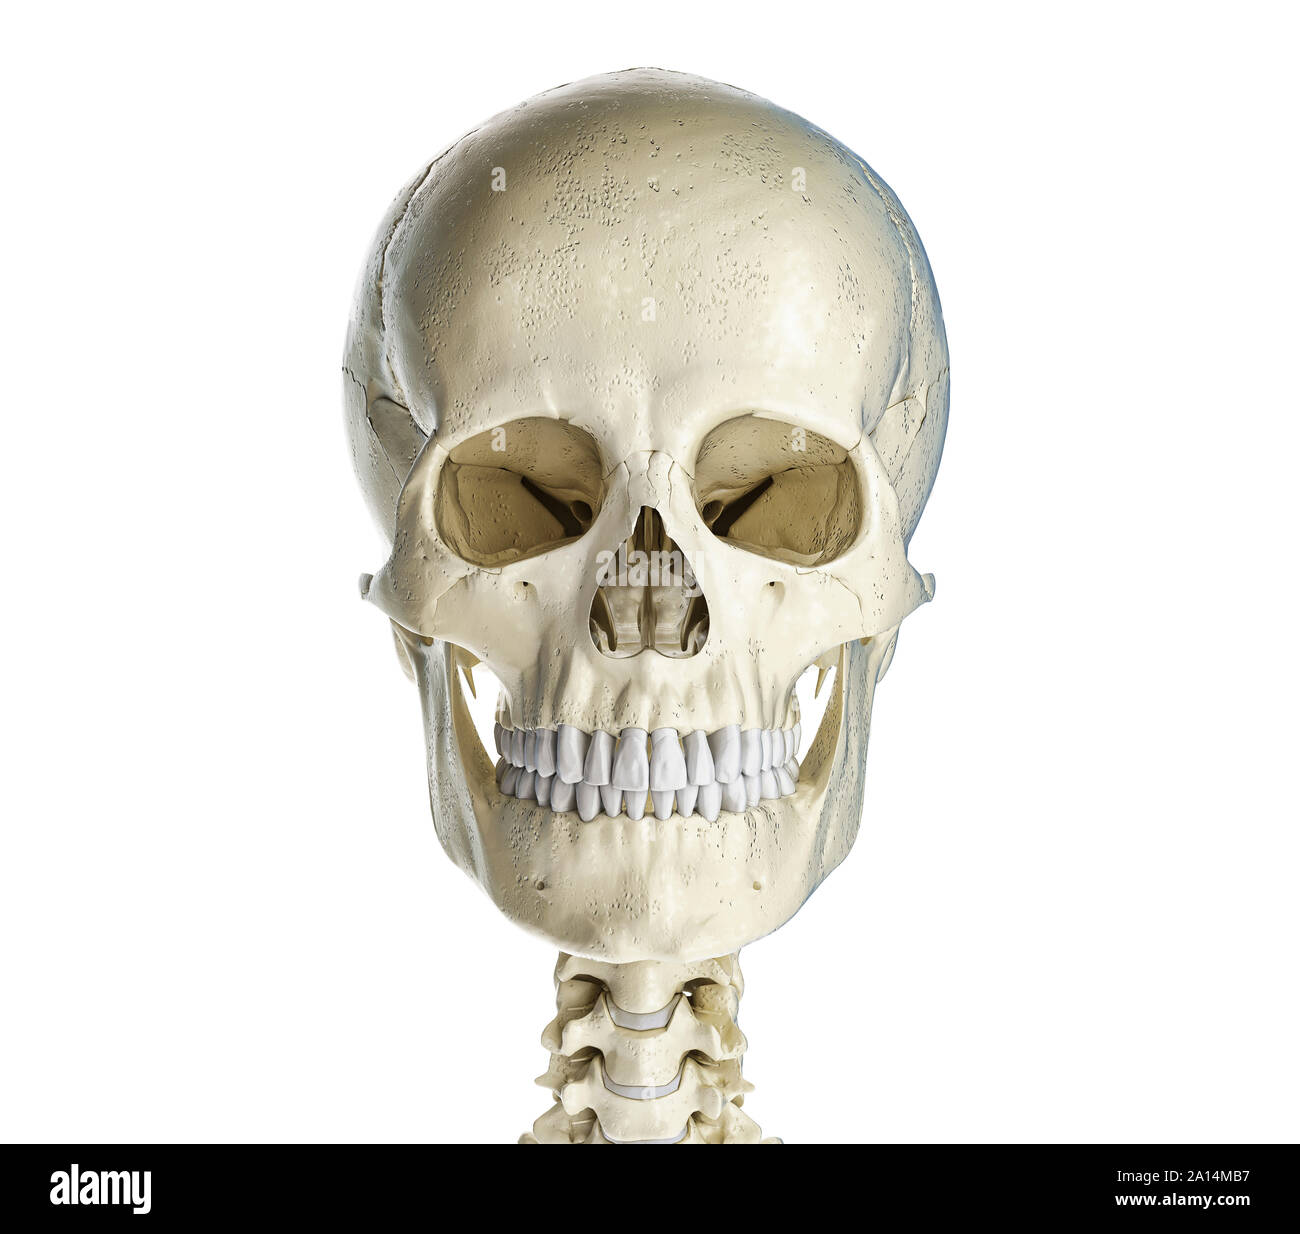 Cranio umano visto dalla parte anteriore, su sfondo bianco. Foto Stock